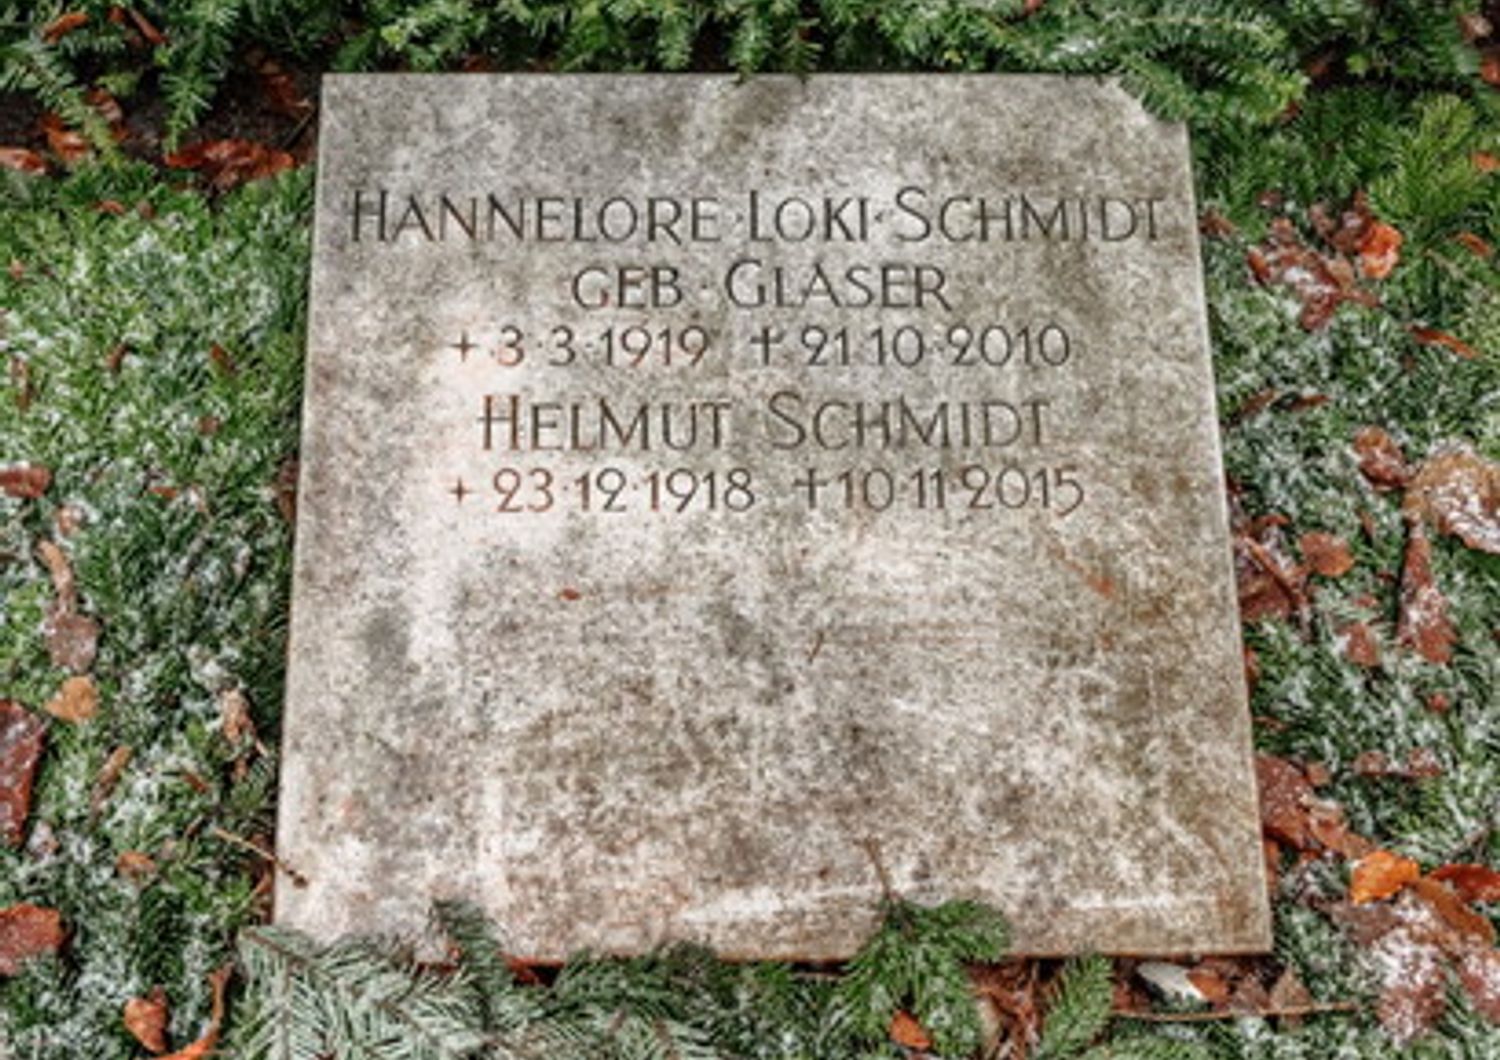 La tomba dell'ex cancelliere Schmidt e della moglie